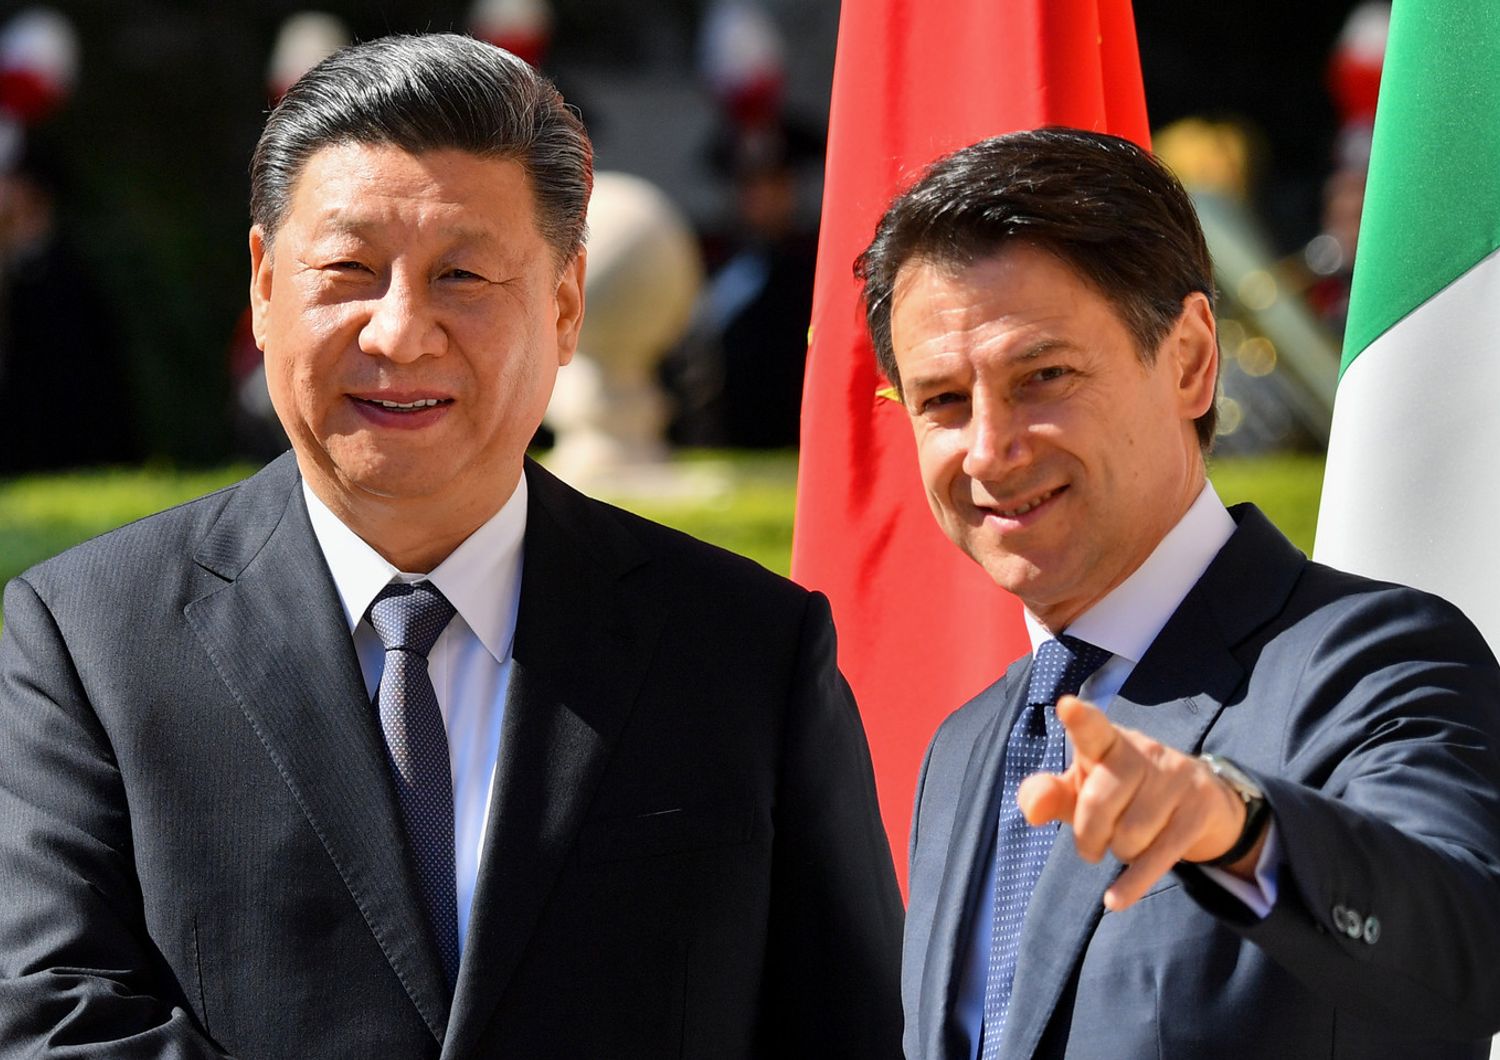 Xi Jinping e Giuseppe Conte